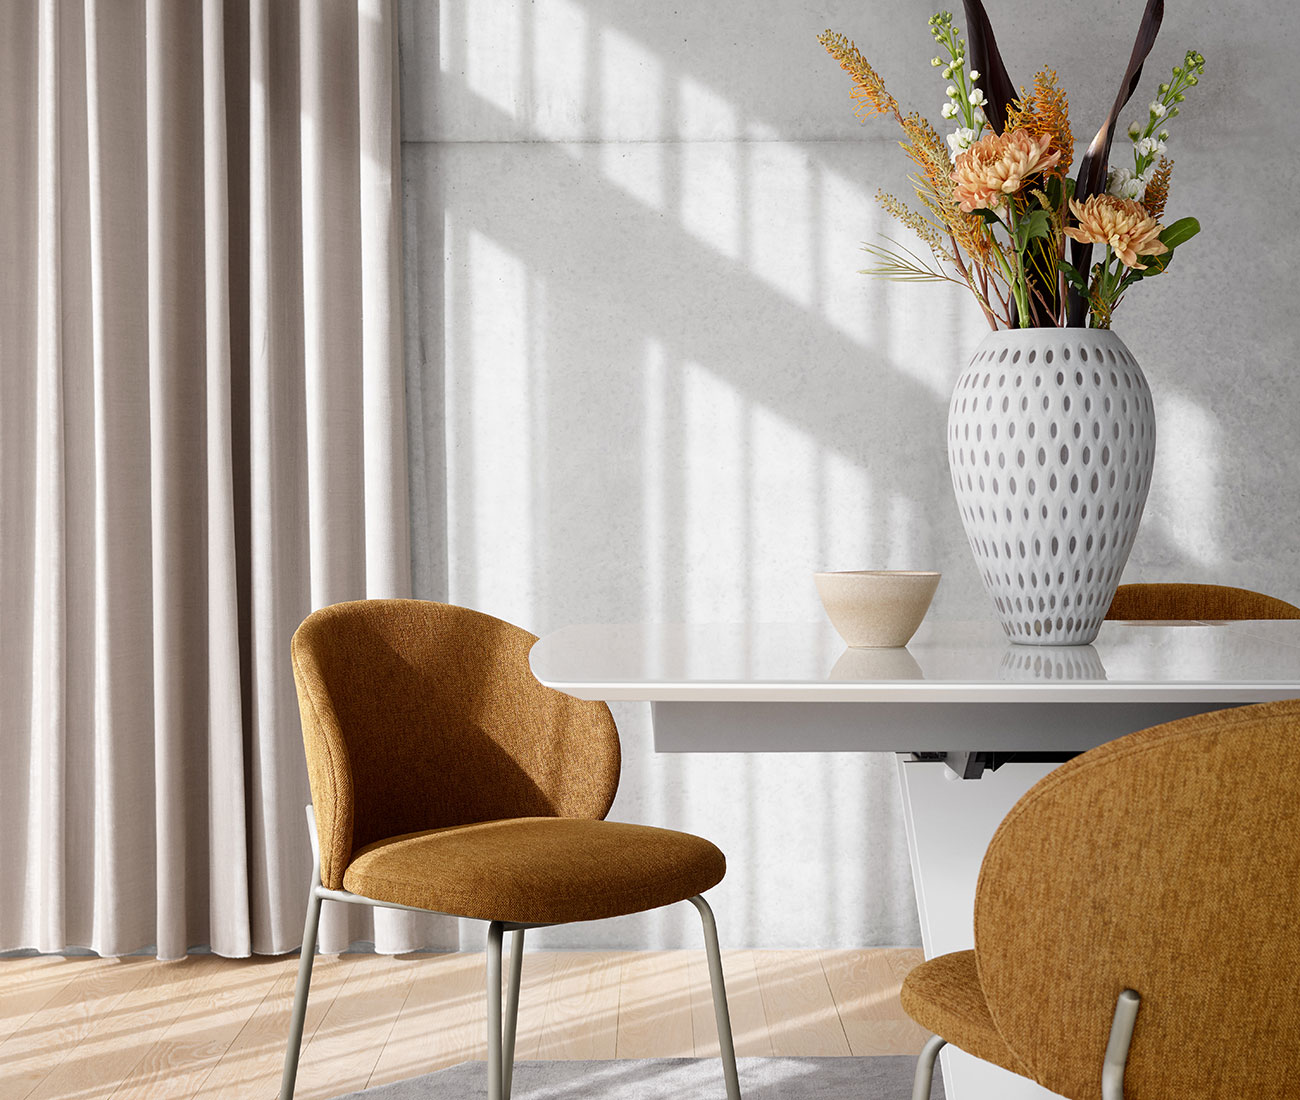 sillaA Ya puede ampliar cada espacio de su casa con estos muebles multifuncionales